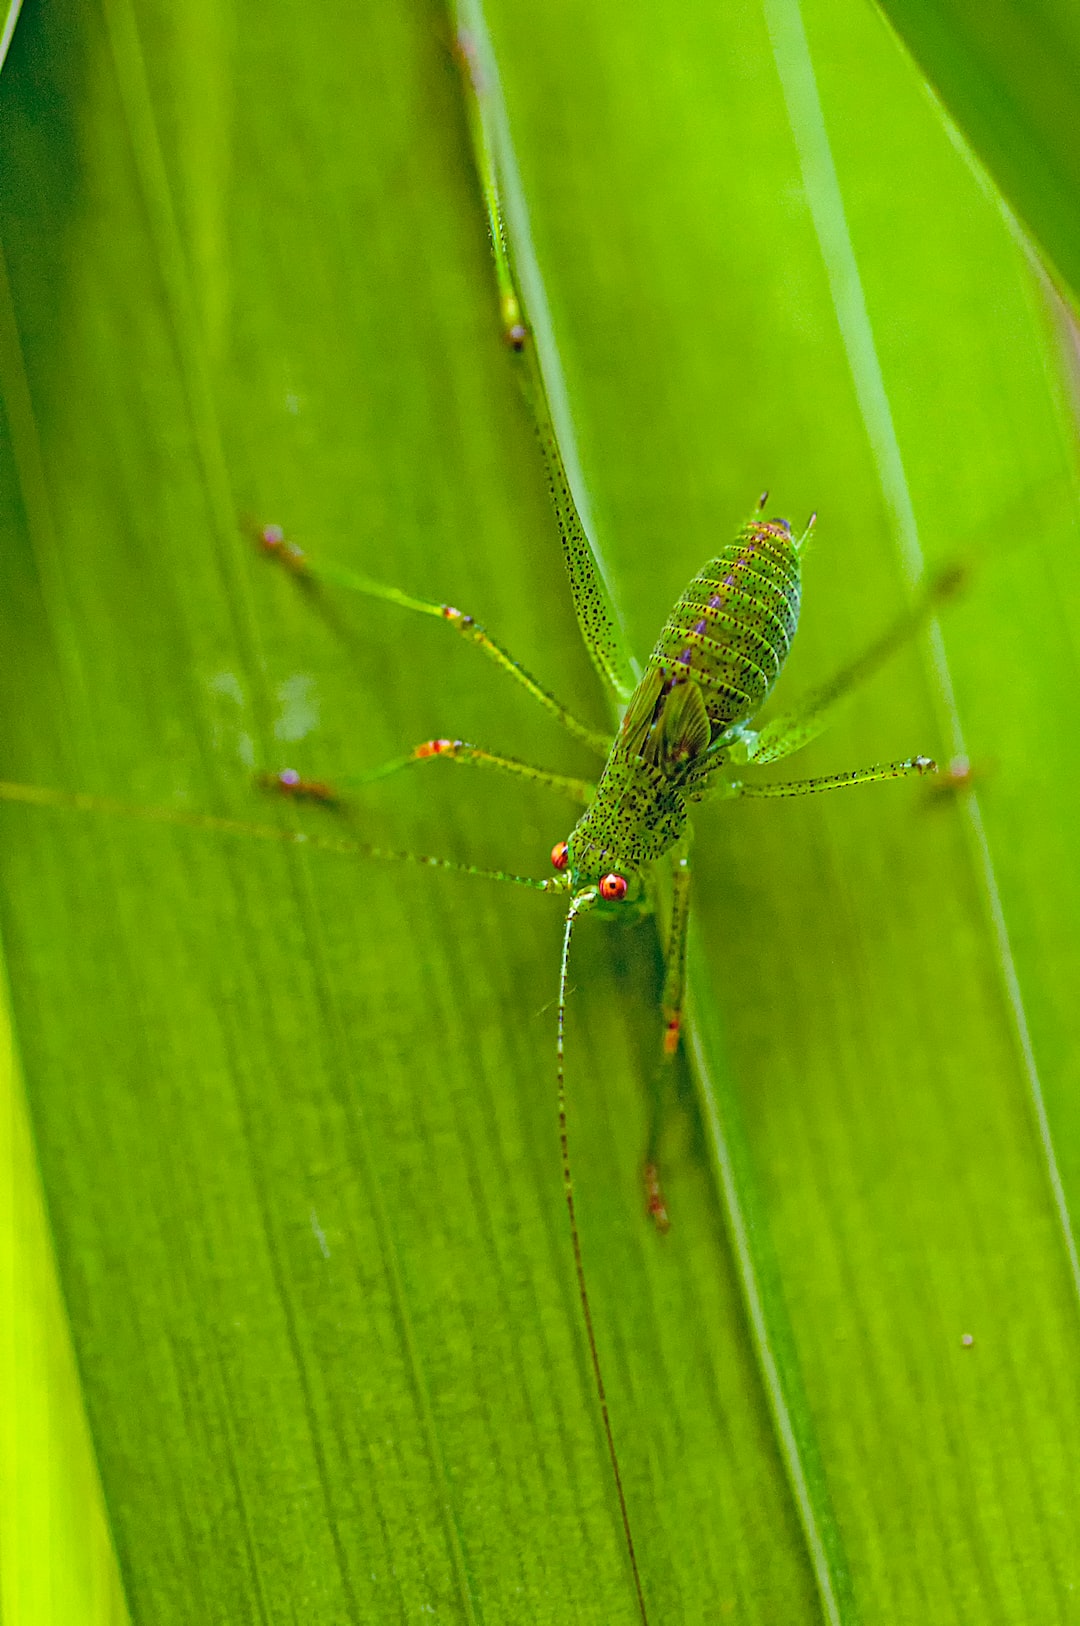 Green Grasshopper on leaf